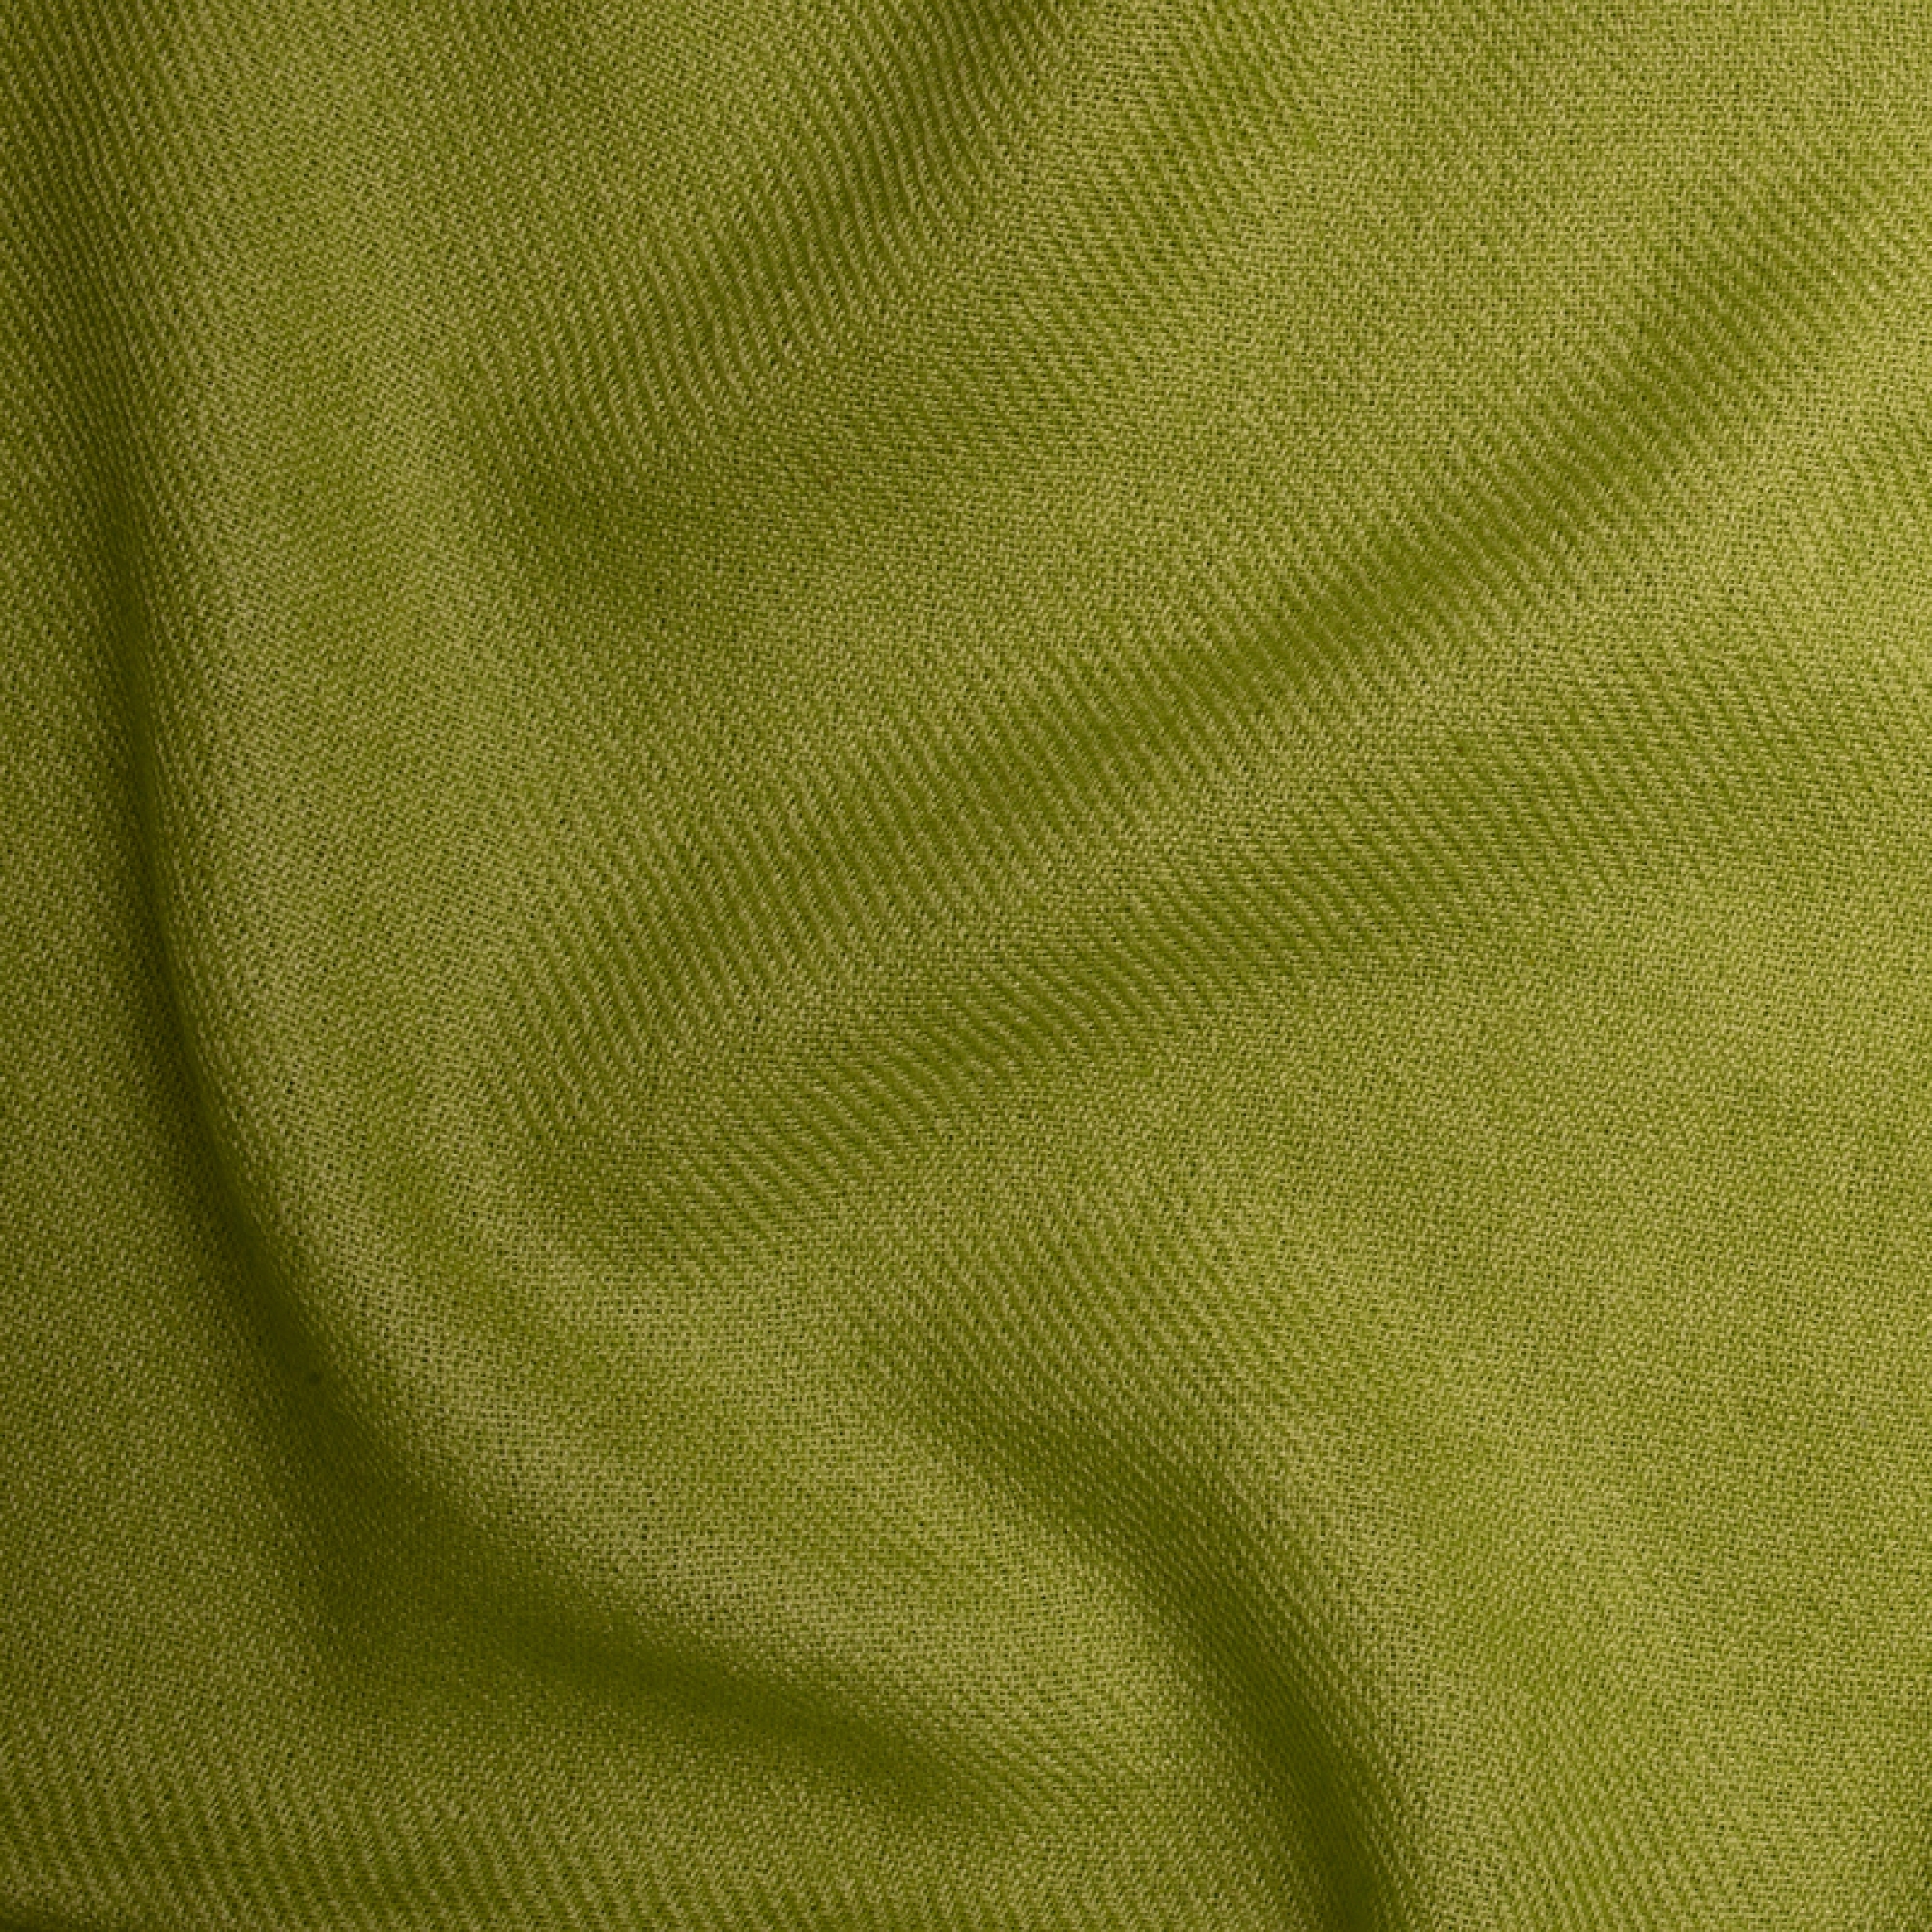 Cachemire accessoires couvertures plaids frisbi 147 x 203 kiwi 147 x 203 cm